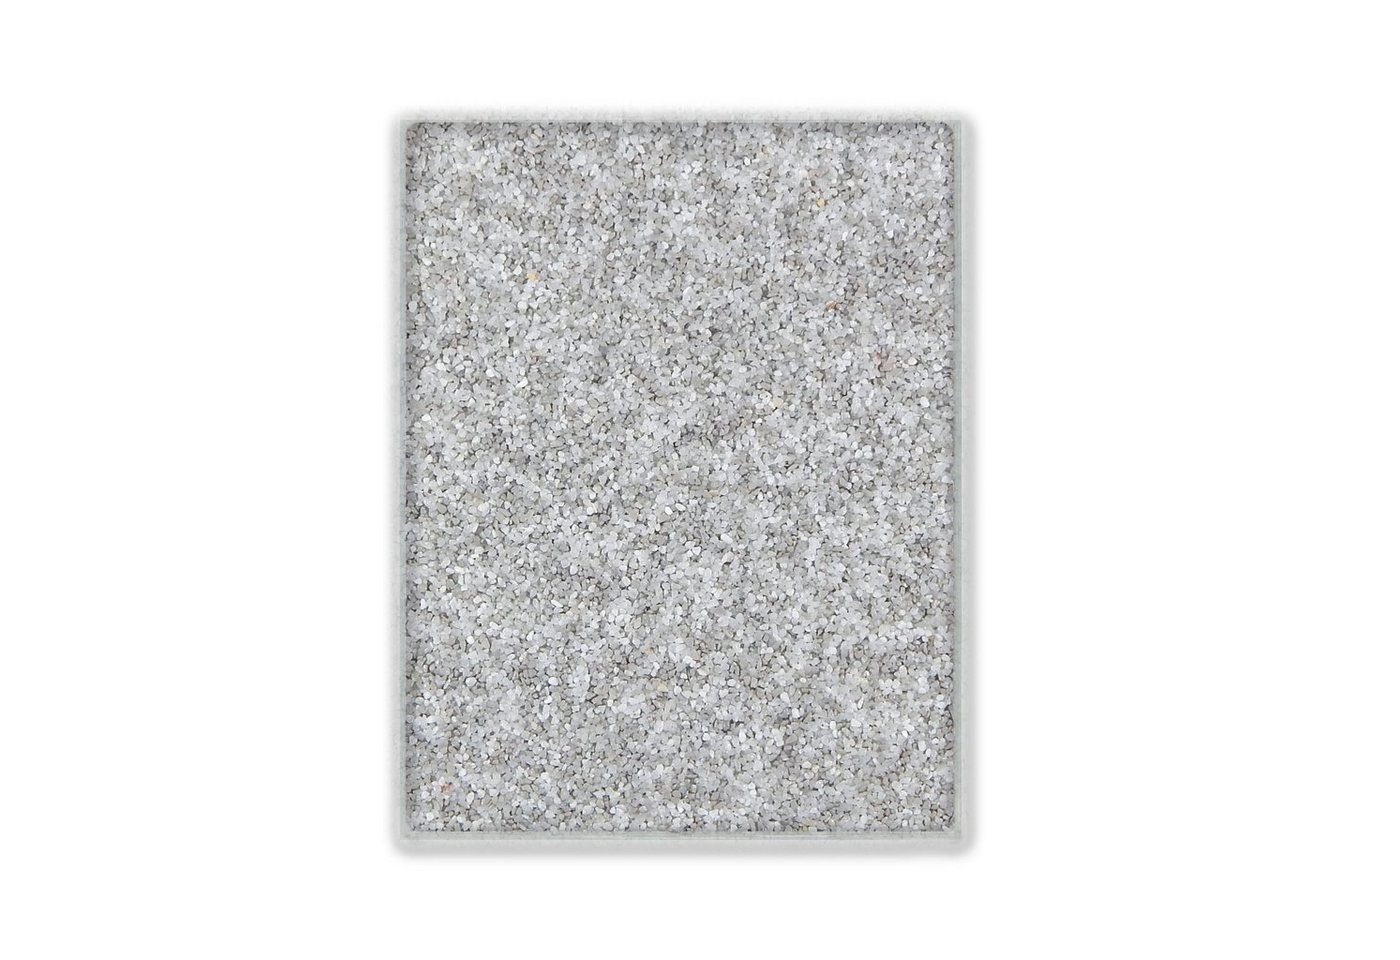 Terralith® Designboden Farbmuster Kompaktboden -mix pisa-, Originalware aus der Charge, die wir in diesem Moment im Abverkauf haben. von Terralith®